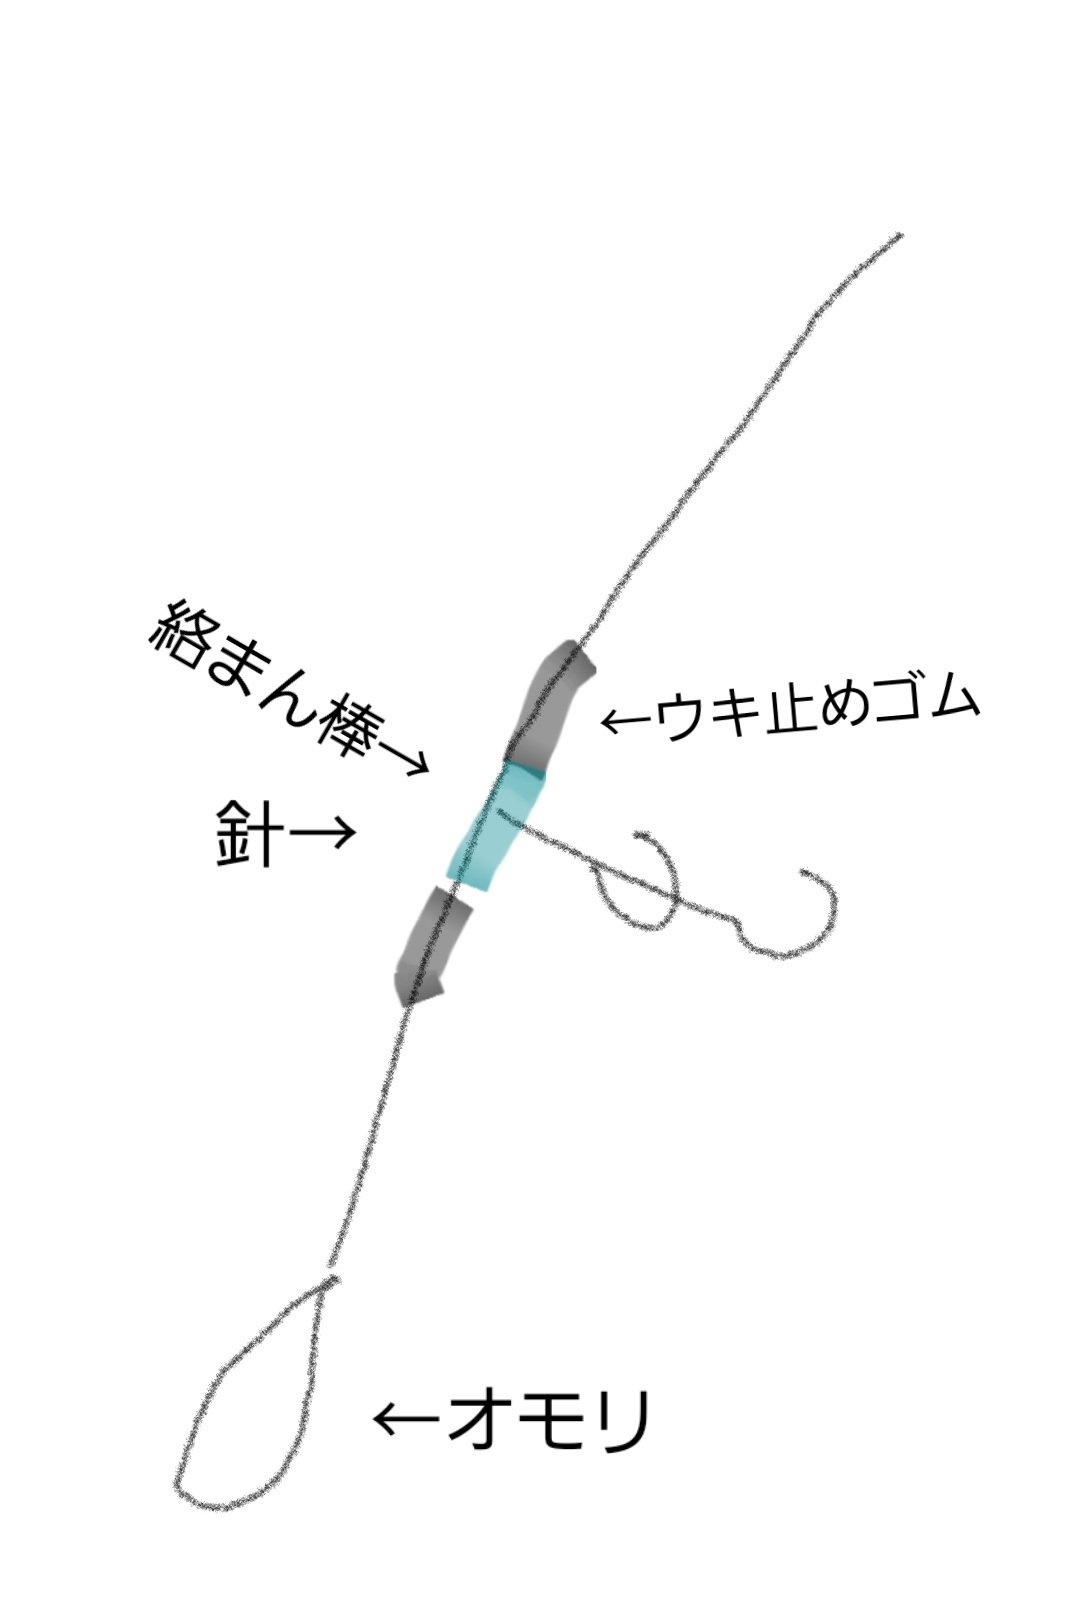 絡まん棒を使用したダウンショットリグを示した図